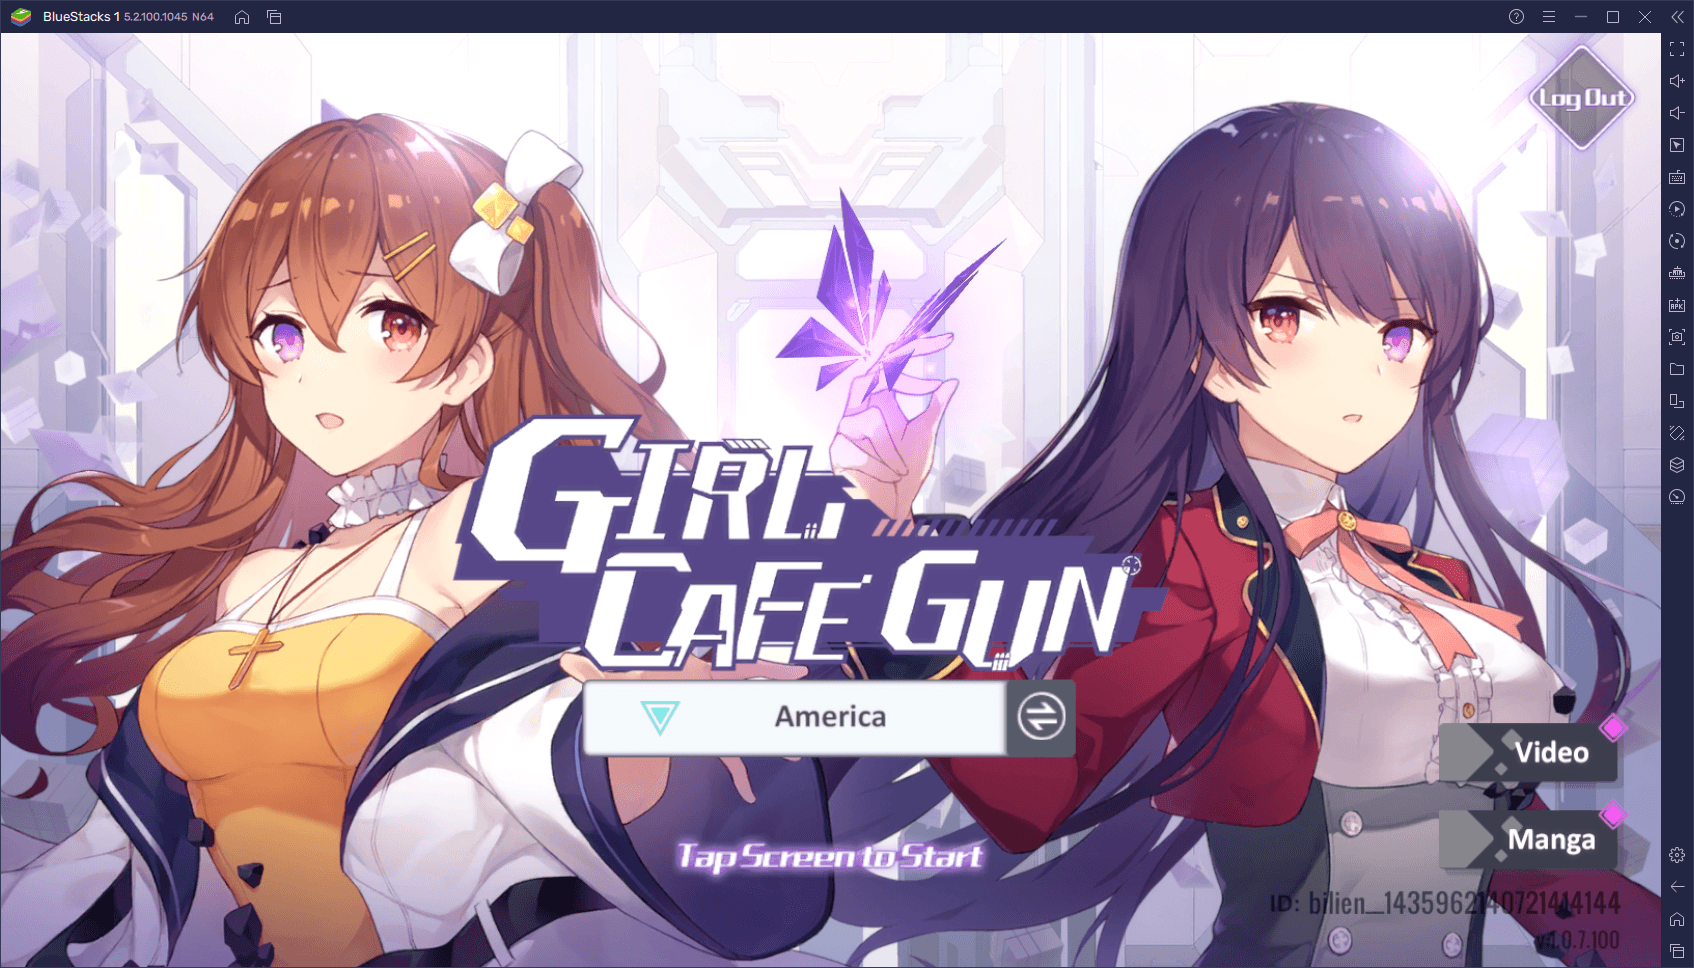 دليل إعادة التدوير في لعبة Girl Cafe Gun - هل يجب عليك إعادة التدوير في Girl Cafe Gun؟